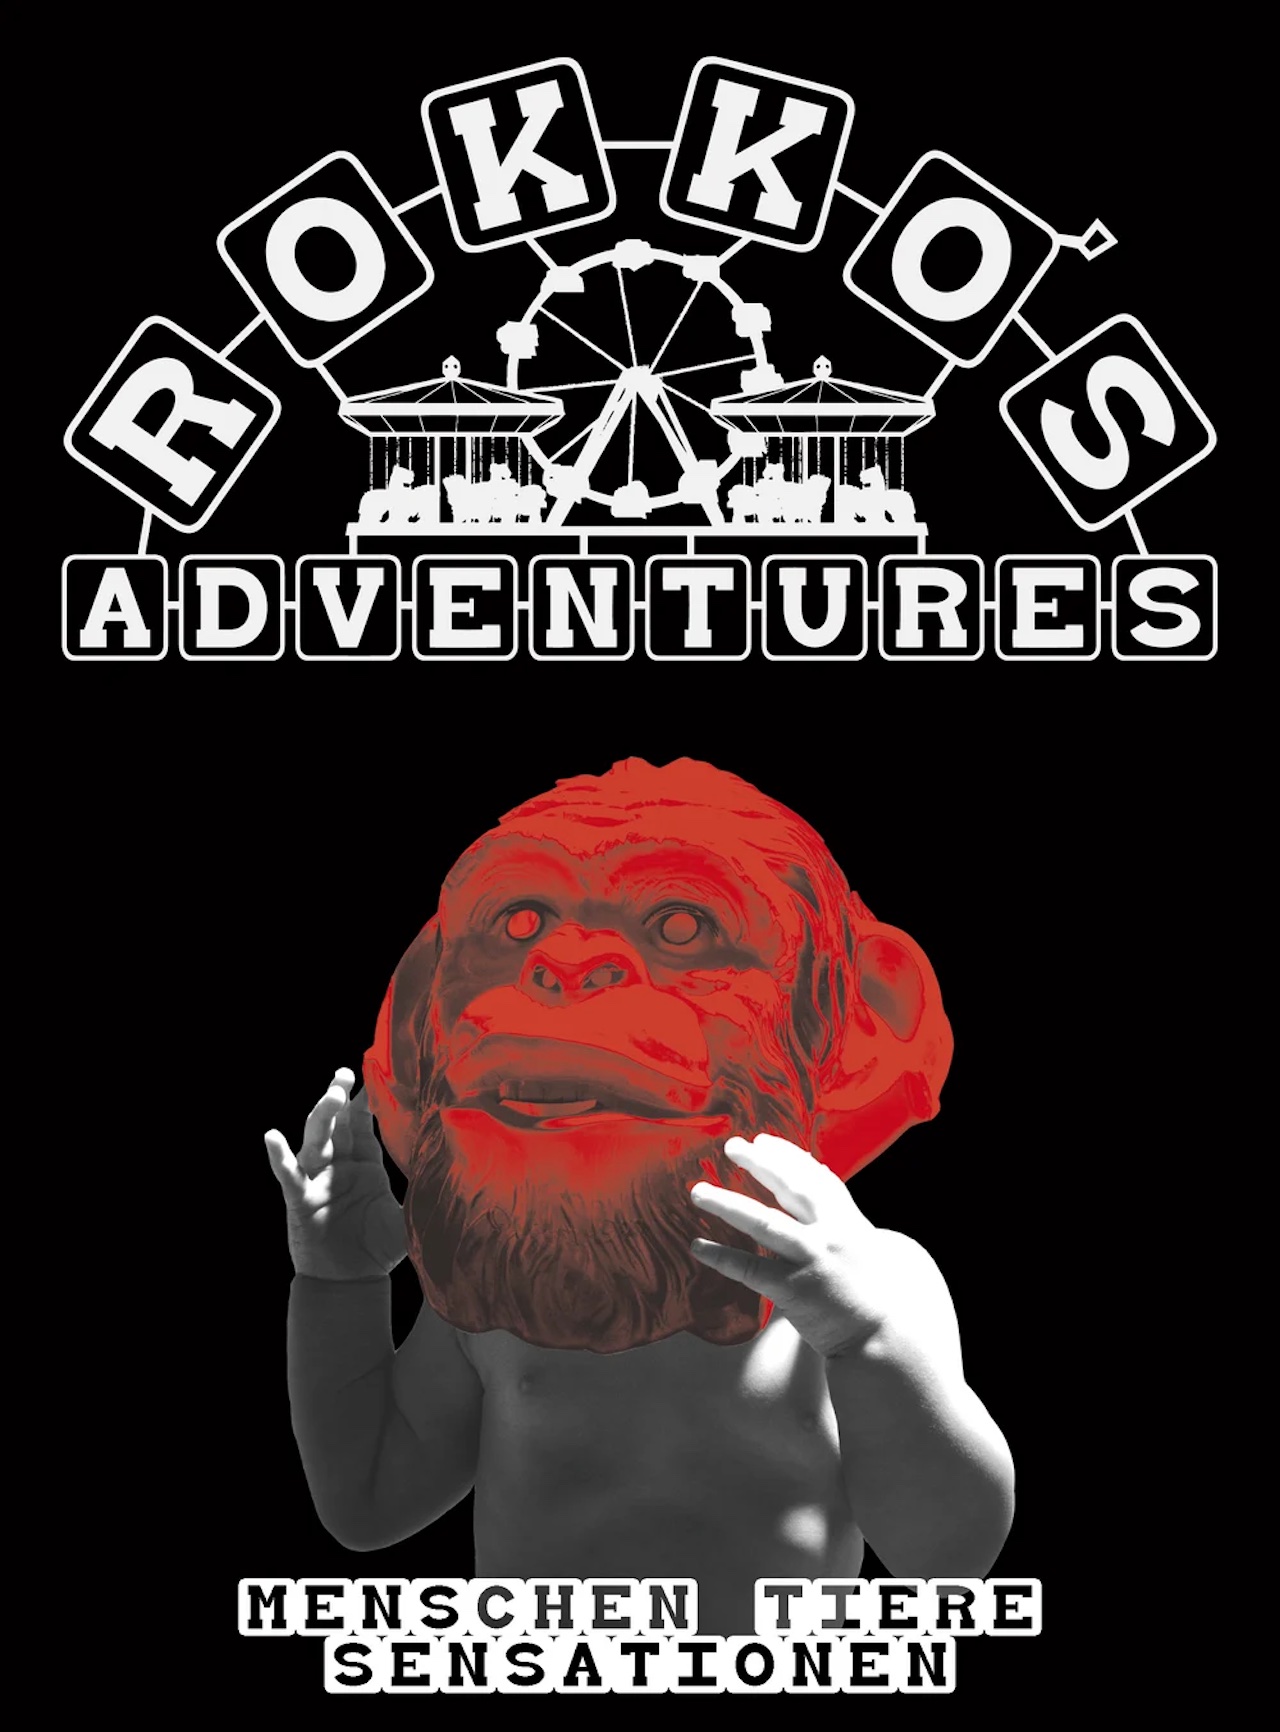 Cover Rokko's Adventures Sammelband: Ein Baby mit einem Affenkopf, darüber das Zirkuslogo des Magazins Rokko's Adventures